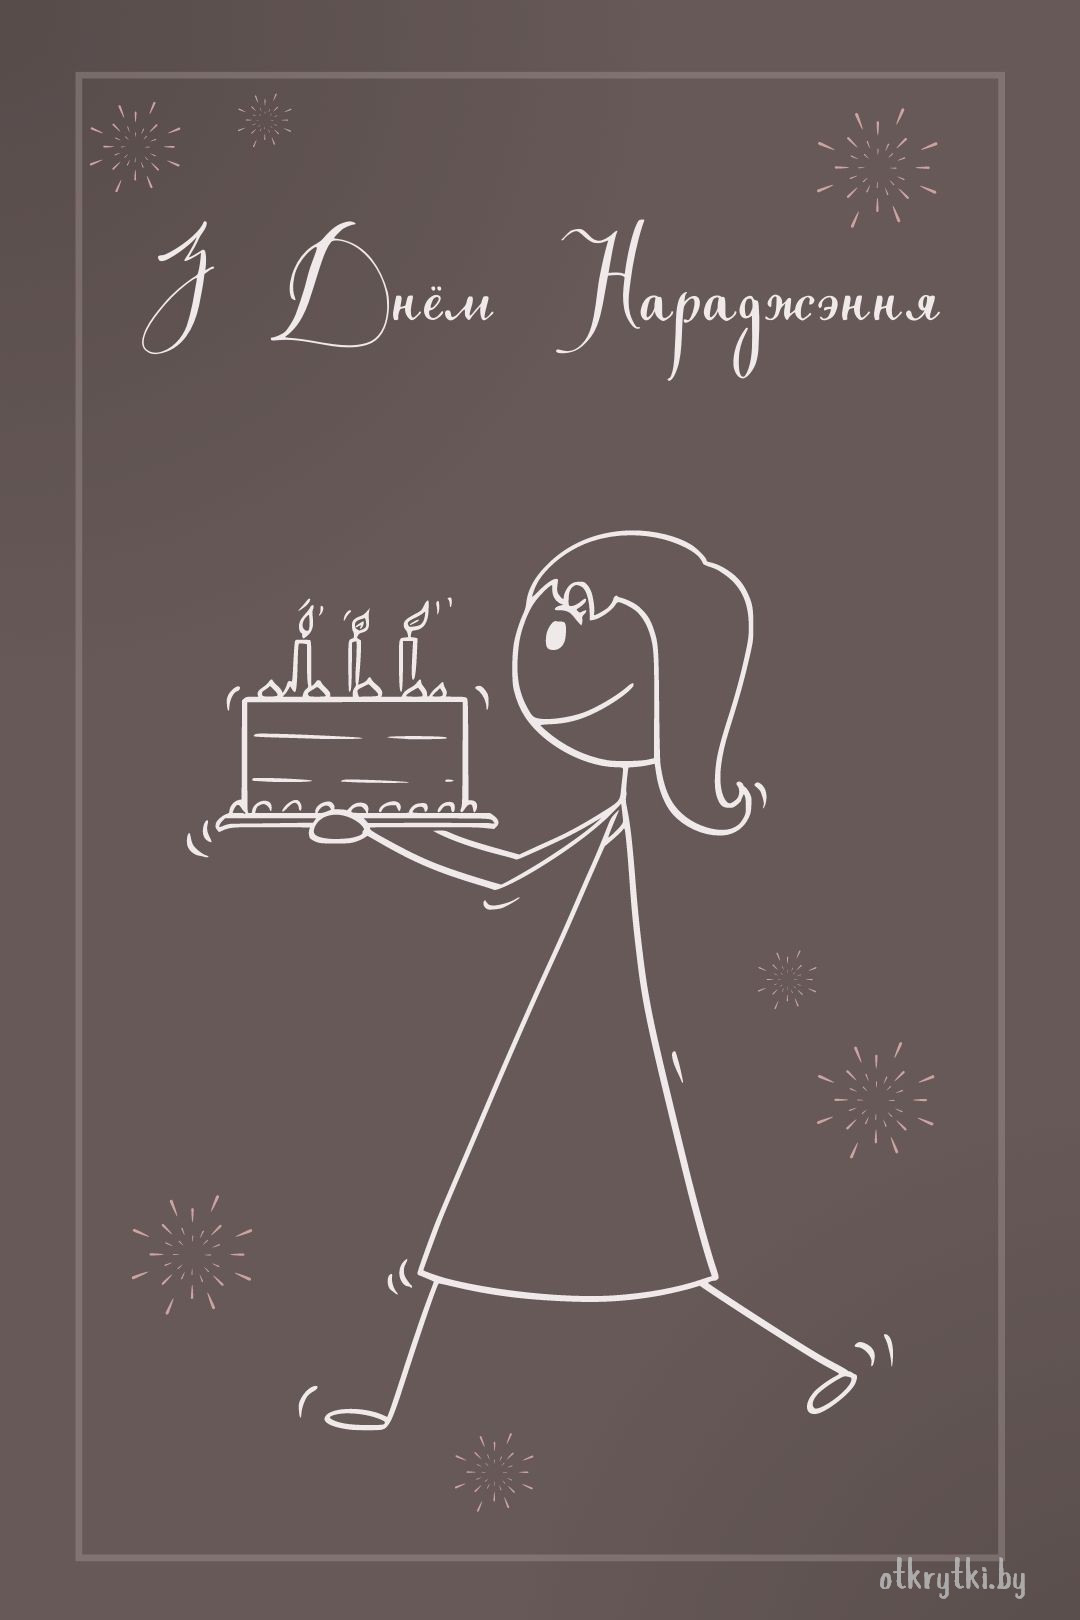 Открытка с днем рождения на белорусском